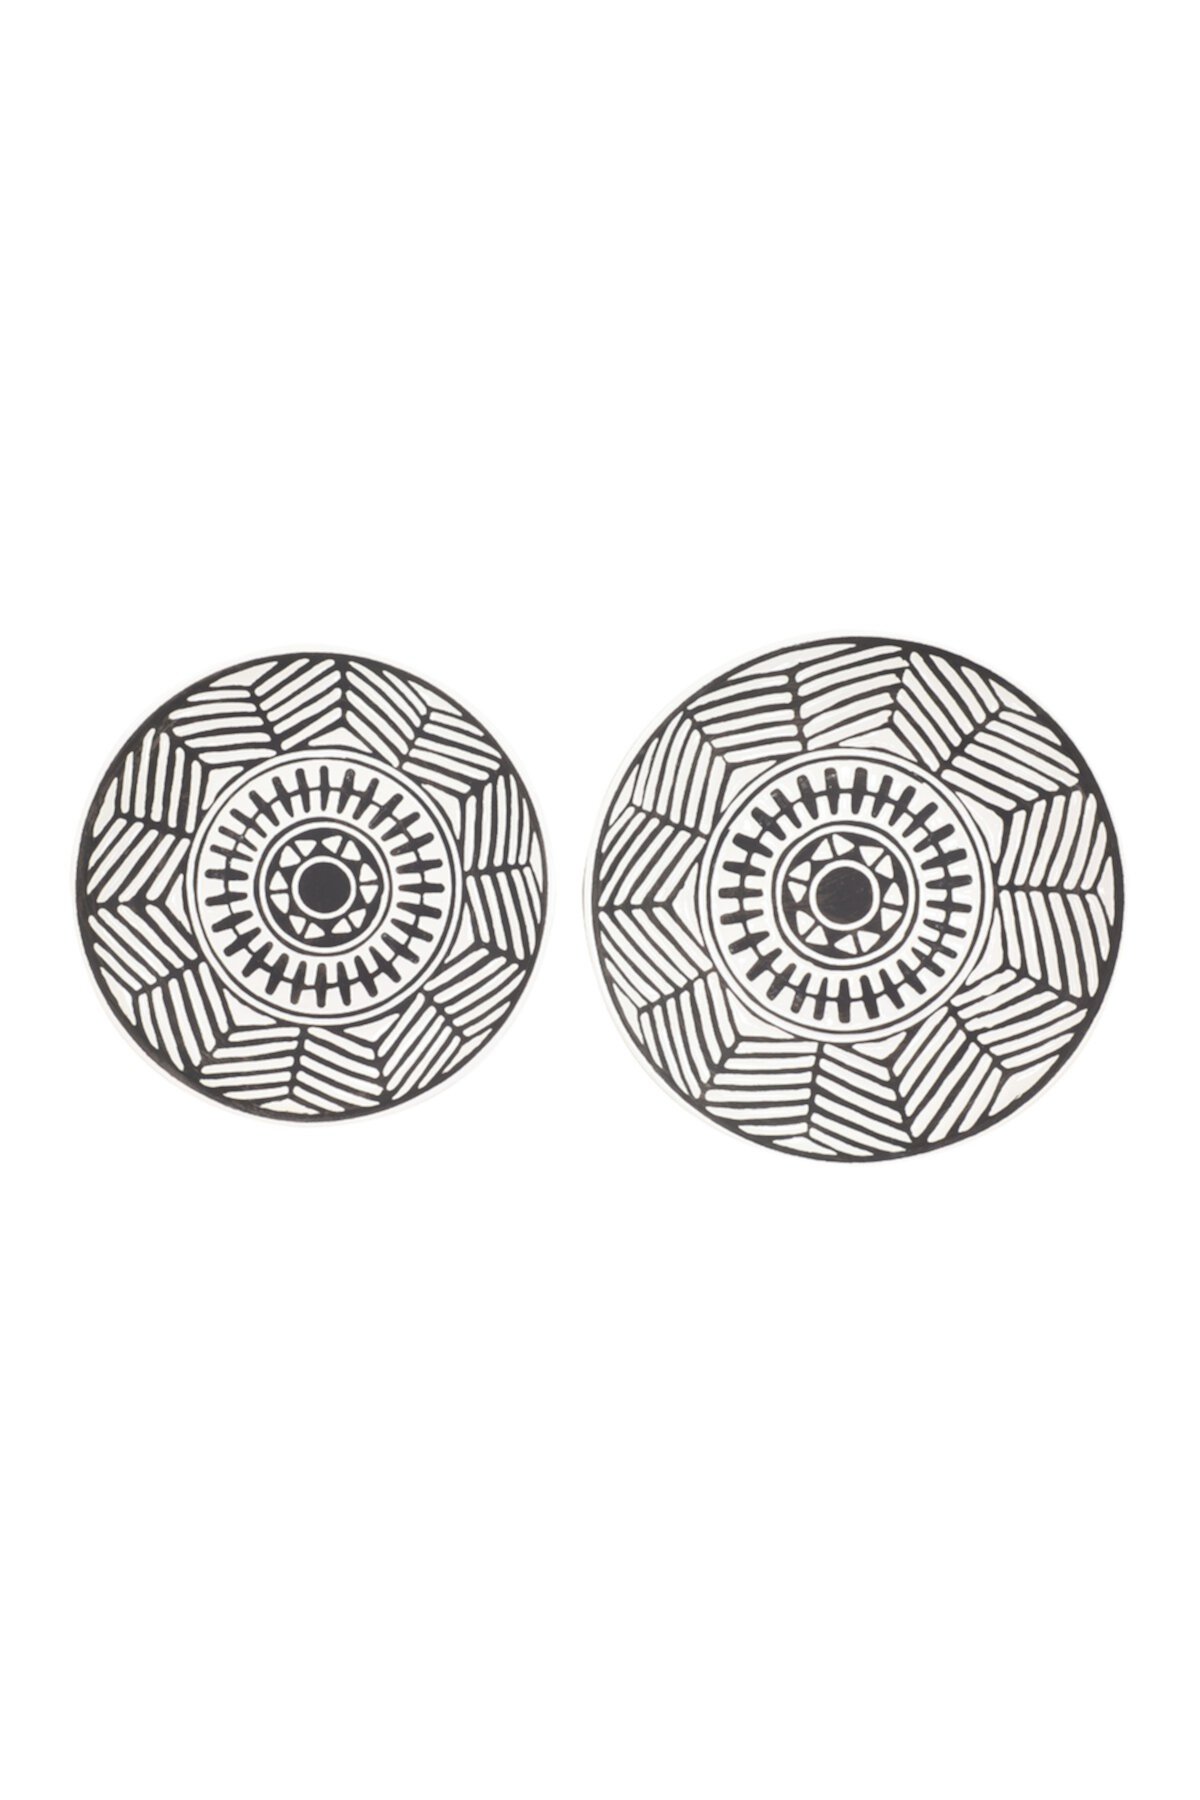 Большие круглые черно-белые керамические декоративные настенные тарелки - набор из 2 шт. Willow Row